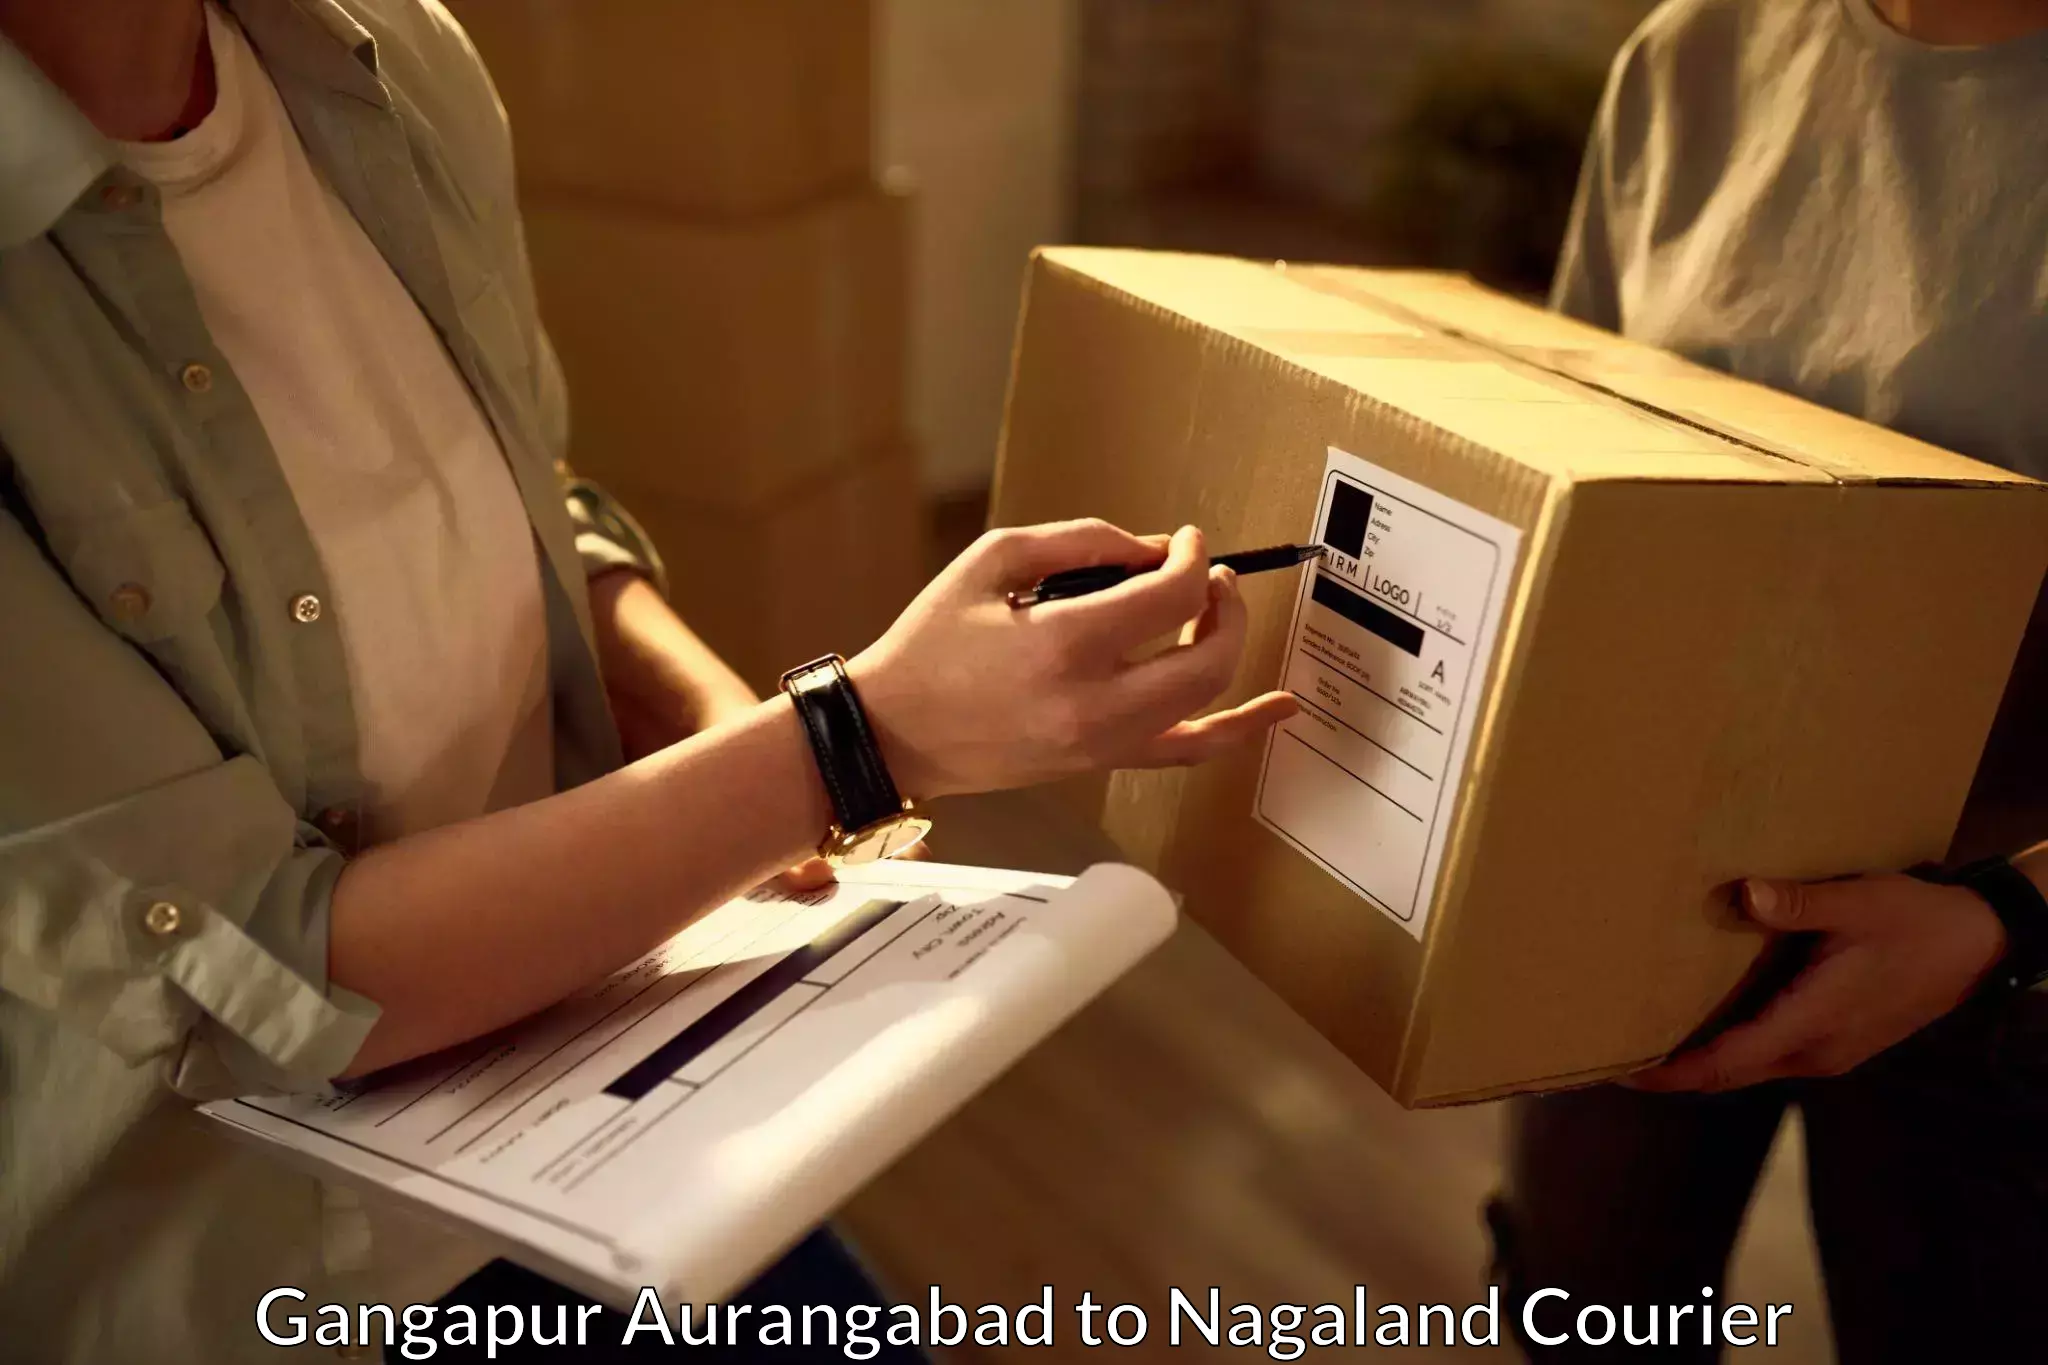 Easy access courier services Gangapur Aurangabad to Dimapur